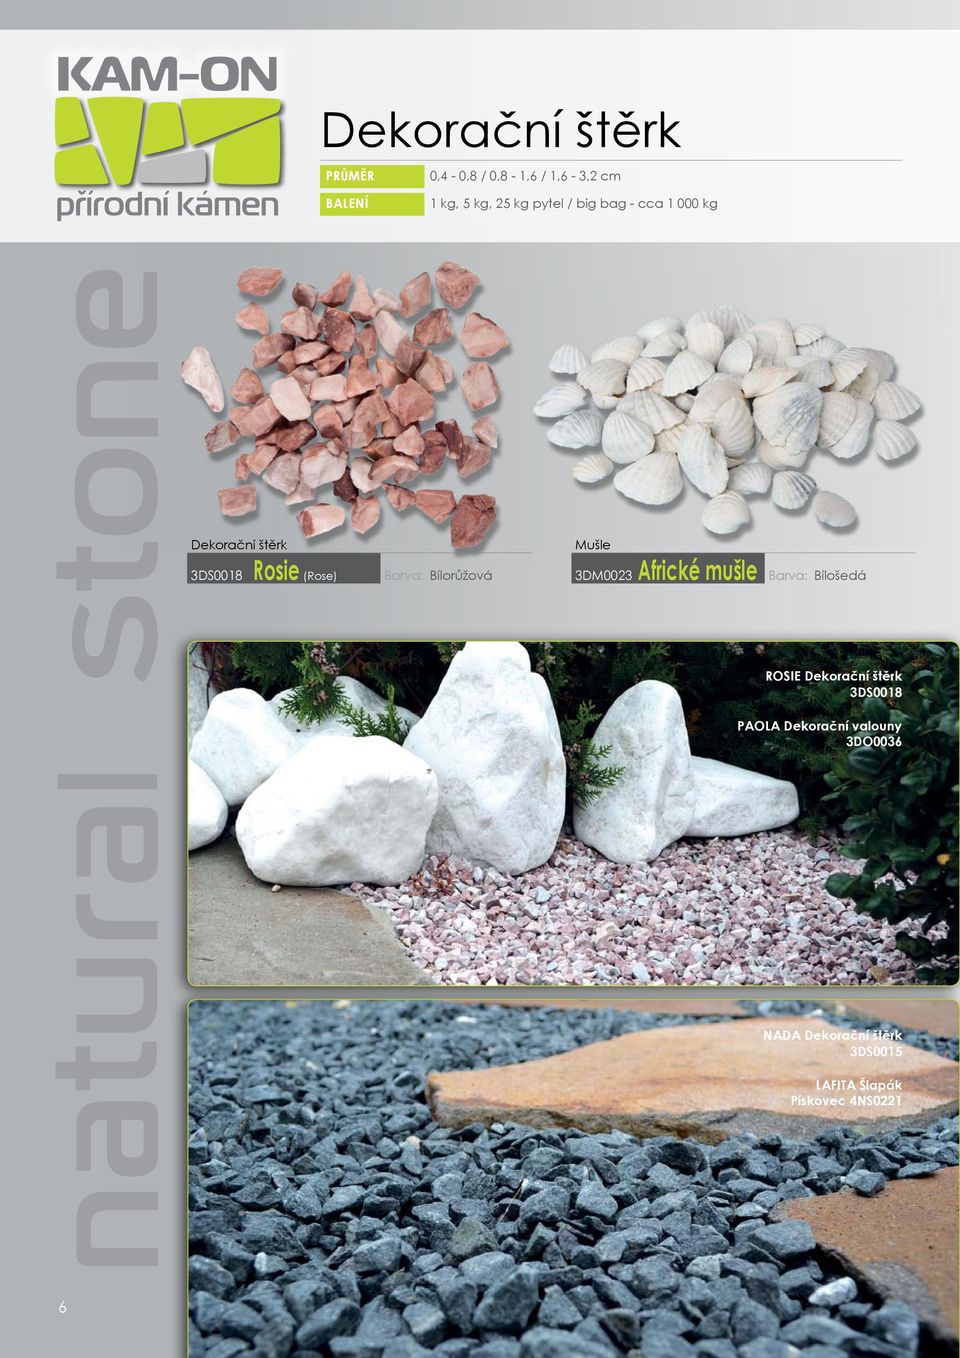 Dekorační kámen štěrky, oblázky a valouny, kusové i solitérní kameny - PDF  Stažení zdarma